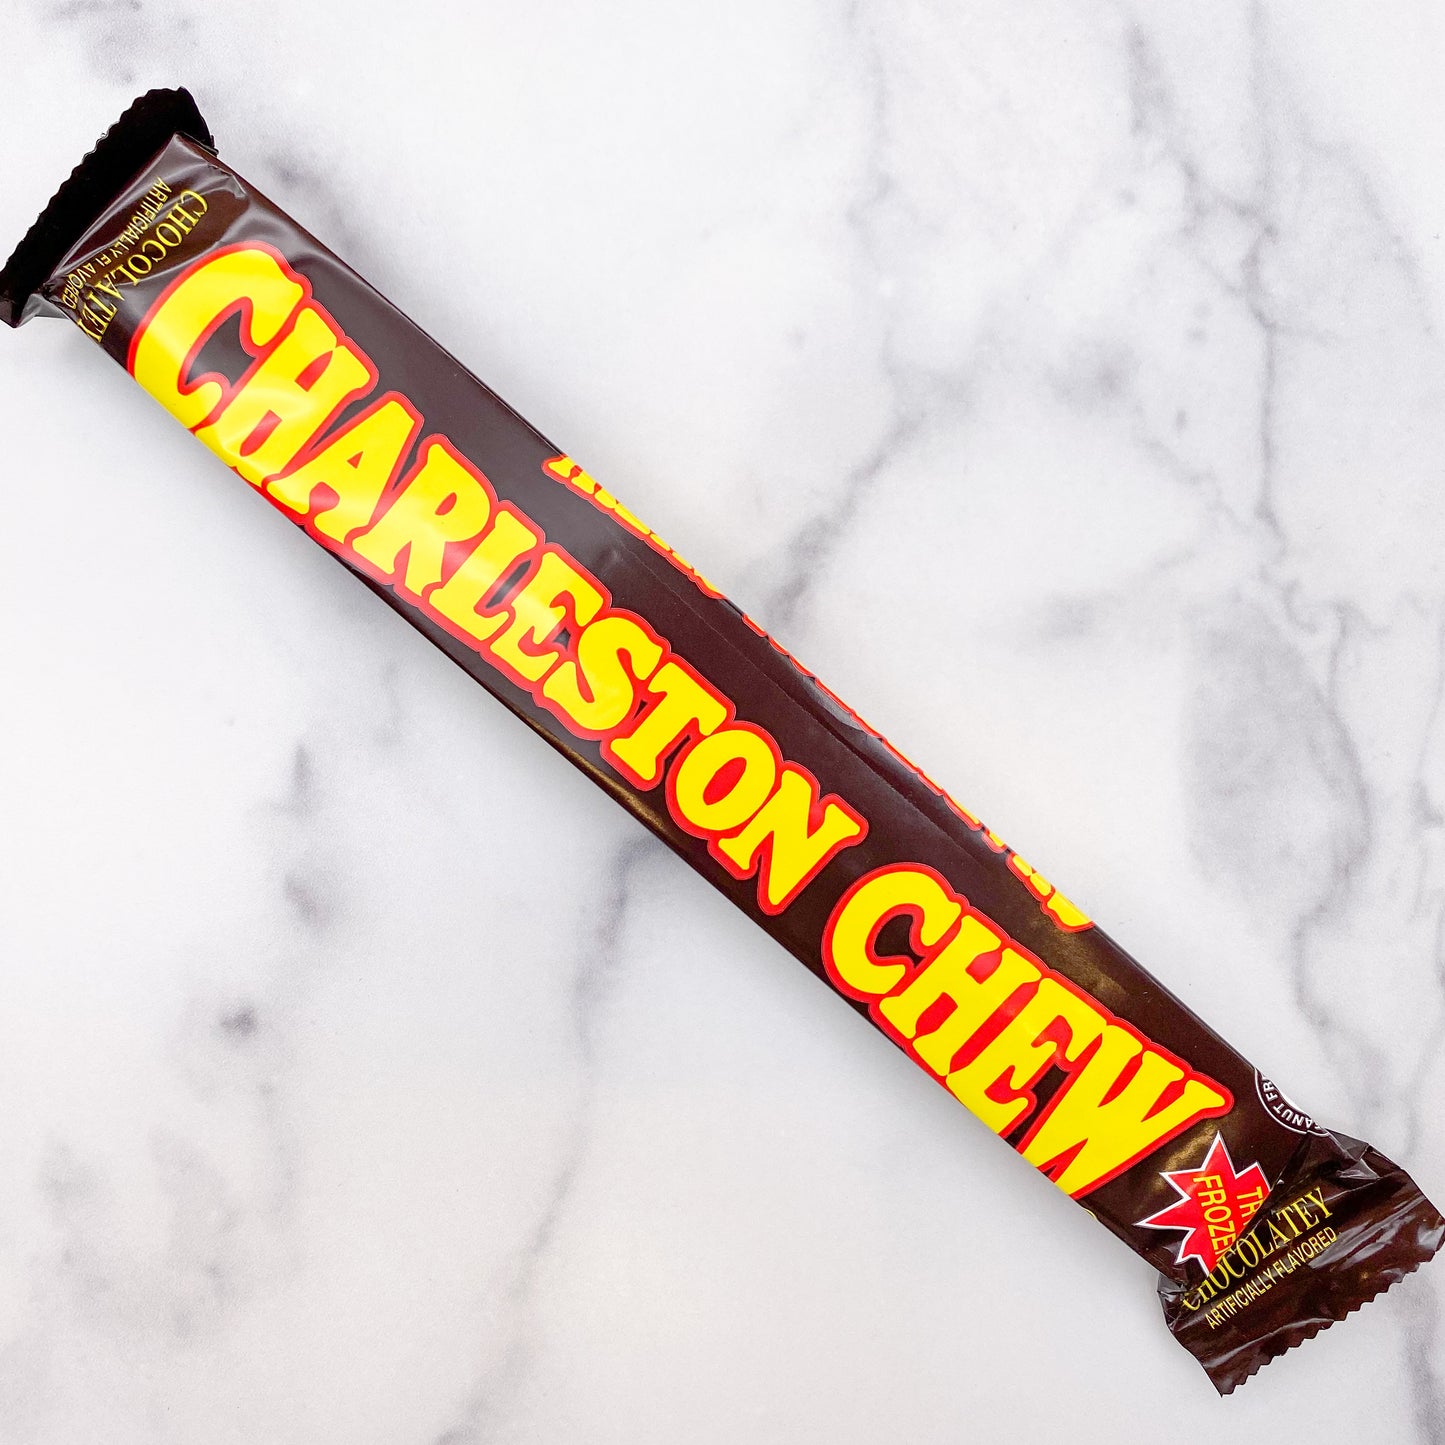 Charleston Chew - Chocolate